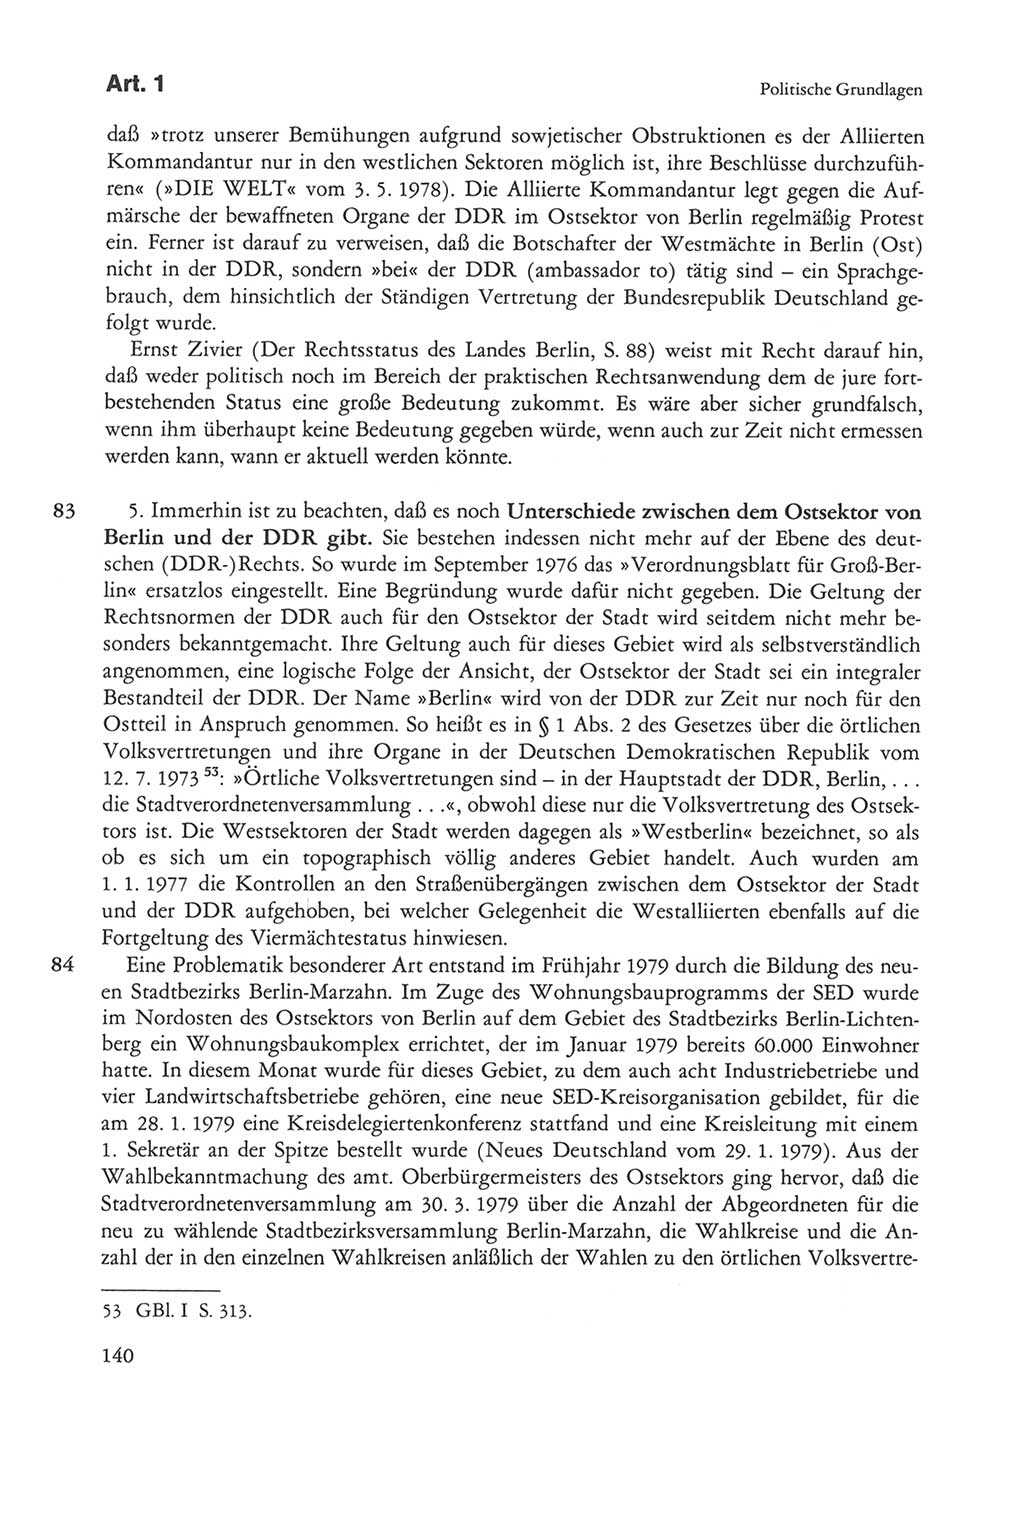 Die sozialistische Verfassung der Deutschen Demokratischen Republik (DDR), Kommentar mit einem Nachtrag 1997, Seite 140 (Soz. Verf. DDR Komm. Nachtr. 1997, S. 140)